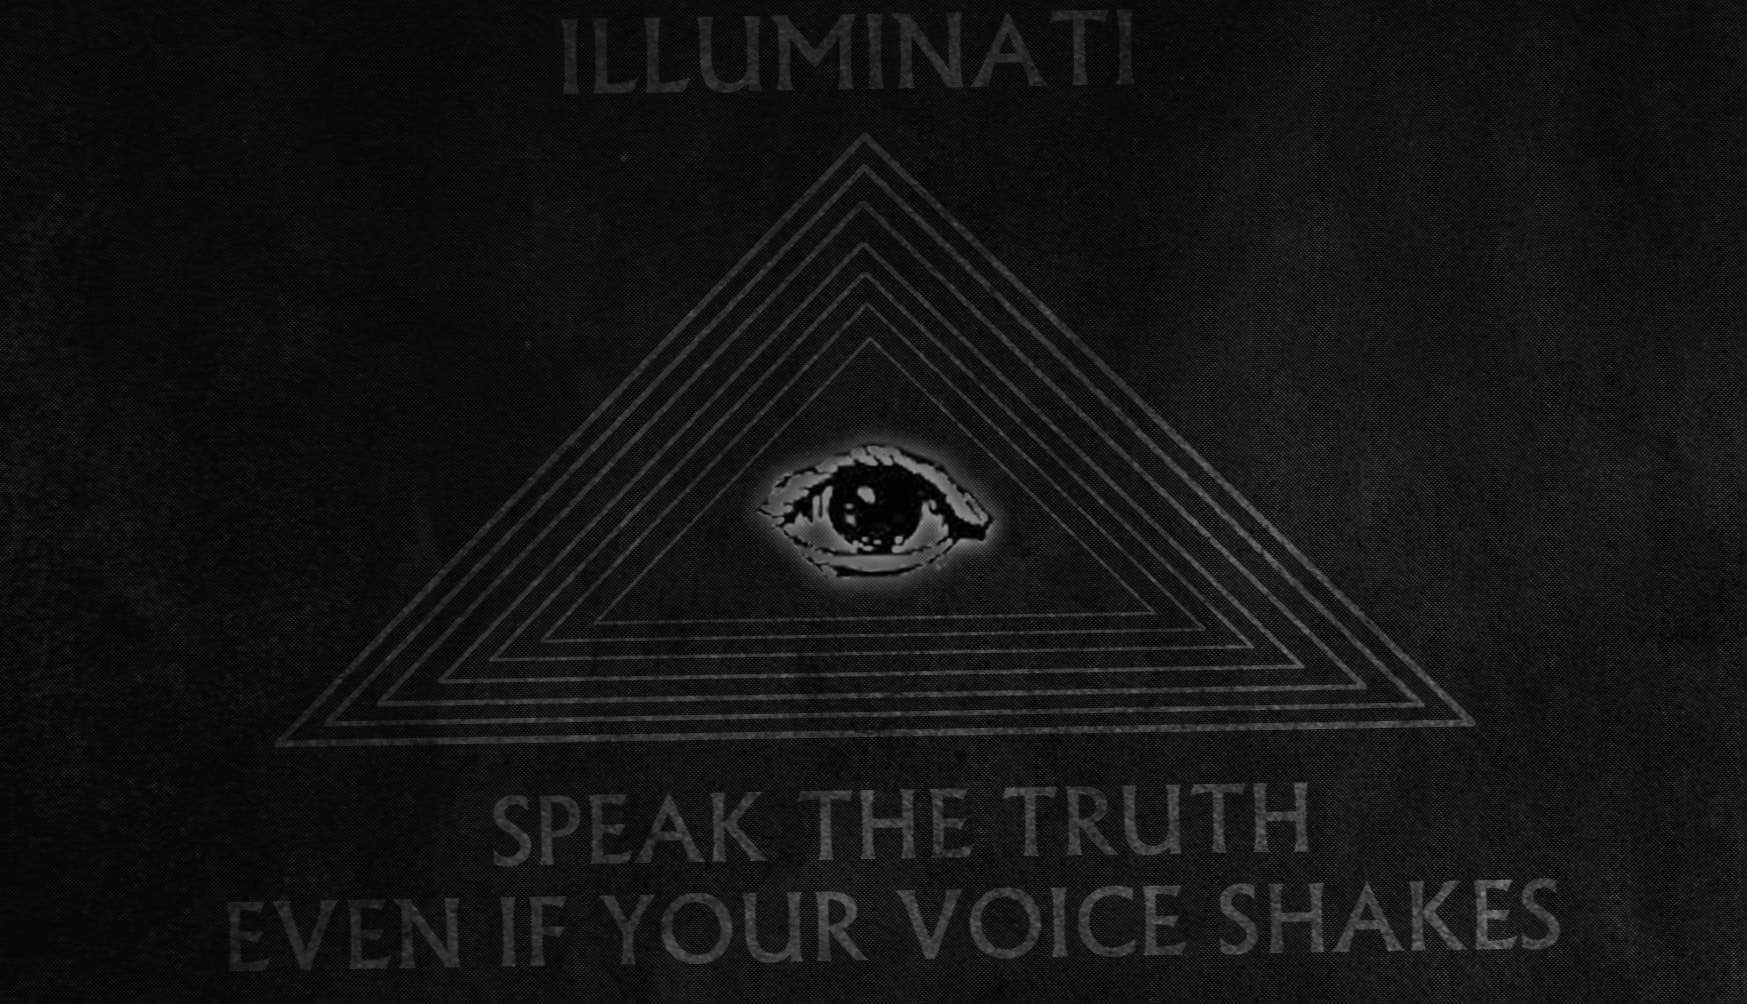 Illuminati at 1024 x 768 size wallpapers HD quality